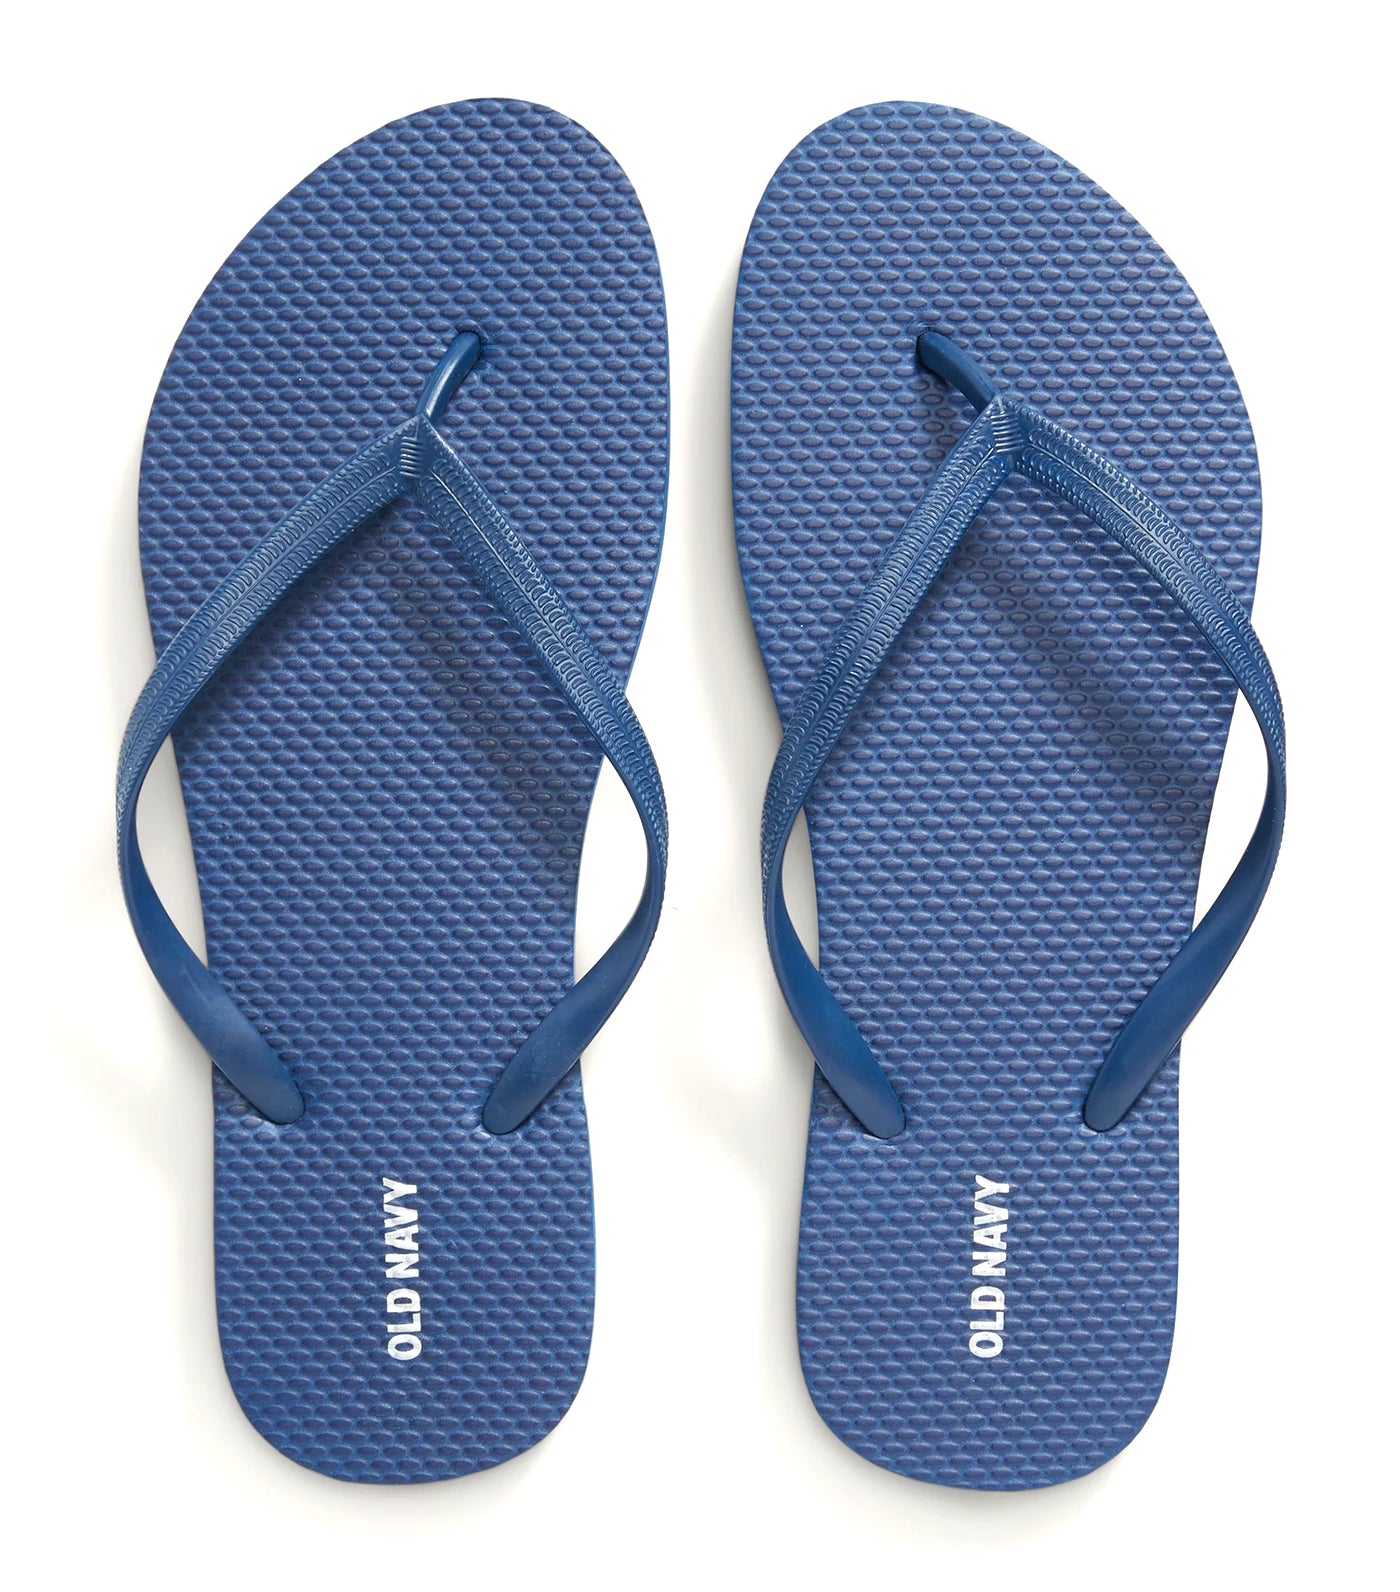 Plant-Based Flip-Flop Sandals for Men Lost At Sea Navy